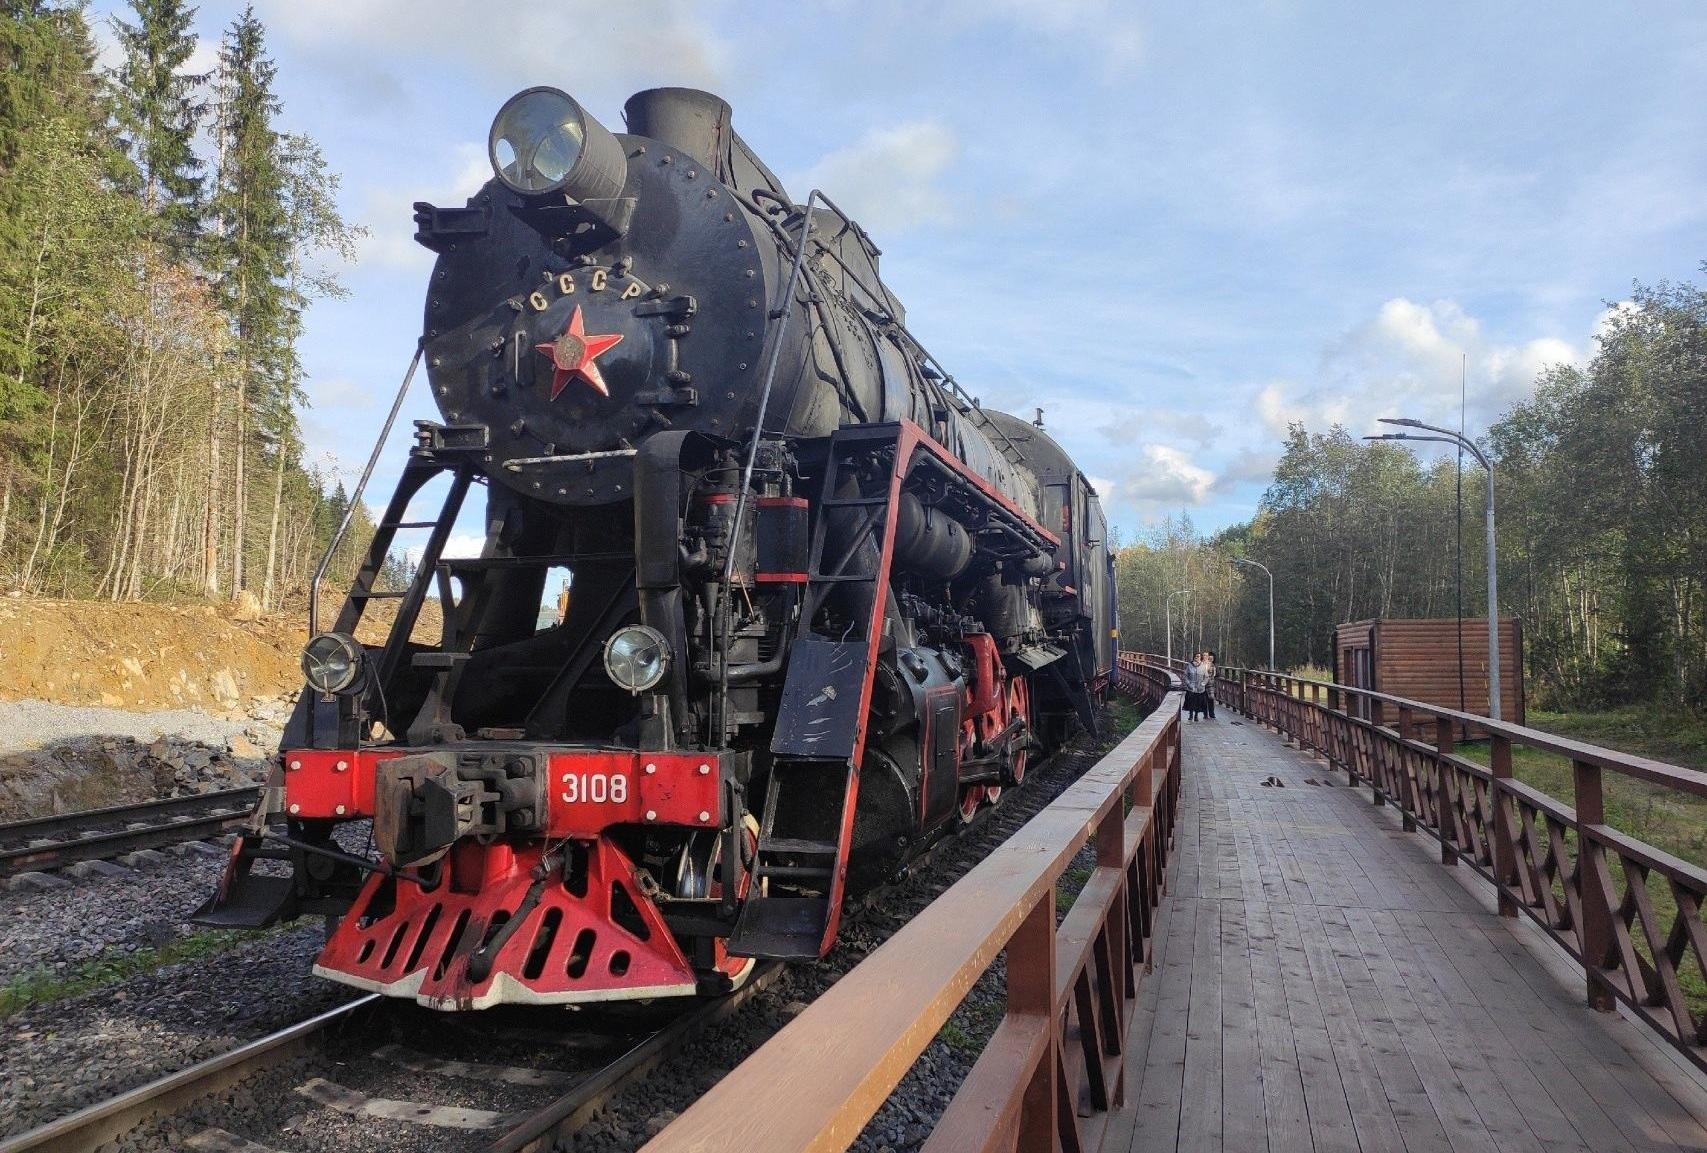 Kesäkuun ensimmäisenä 2019 Sortavalasta Ruskealan marmoripuistoon lähti ensimmäinen retrojunavuoro. Parhaillaan Ruskealan retrojuna on suuressa suosiossa turistien keskuudessa. Kuva: Jekaterina Pospelova